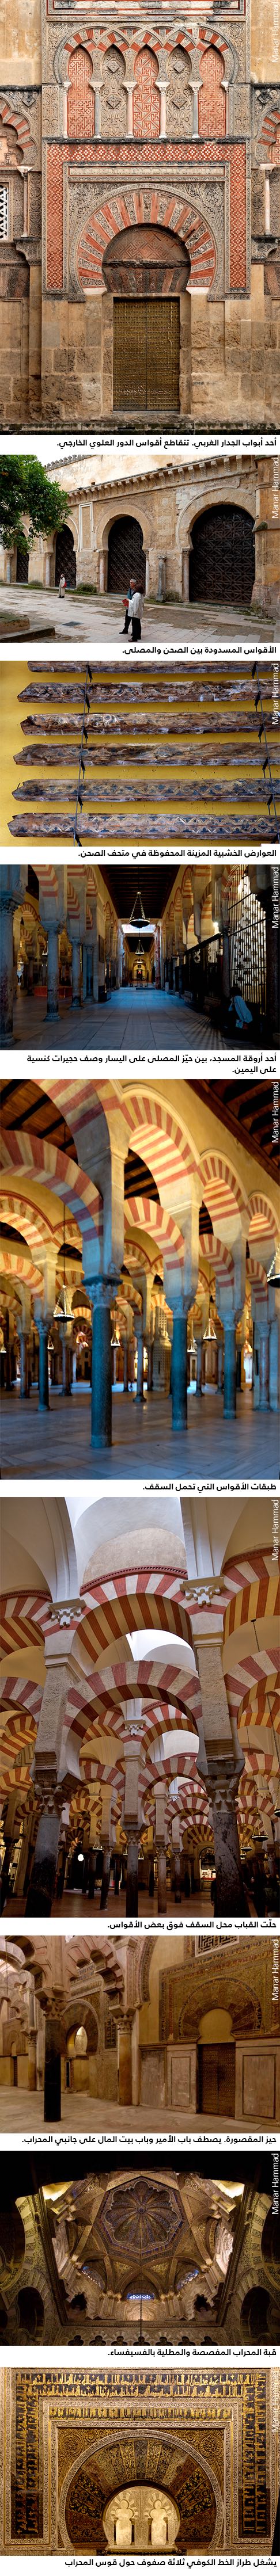 جولة في مسجد قرطبة - جولة تصويرية داخل مسجد قرطبة في إسبانيا